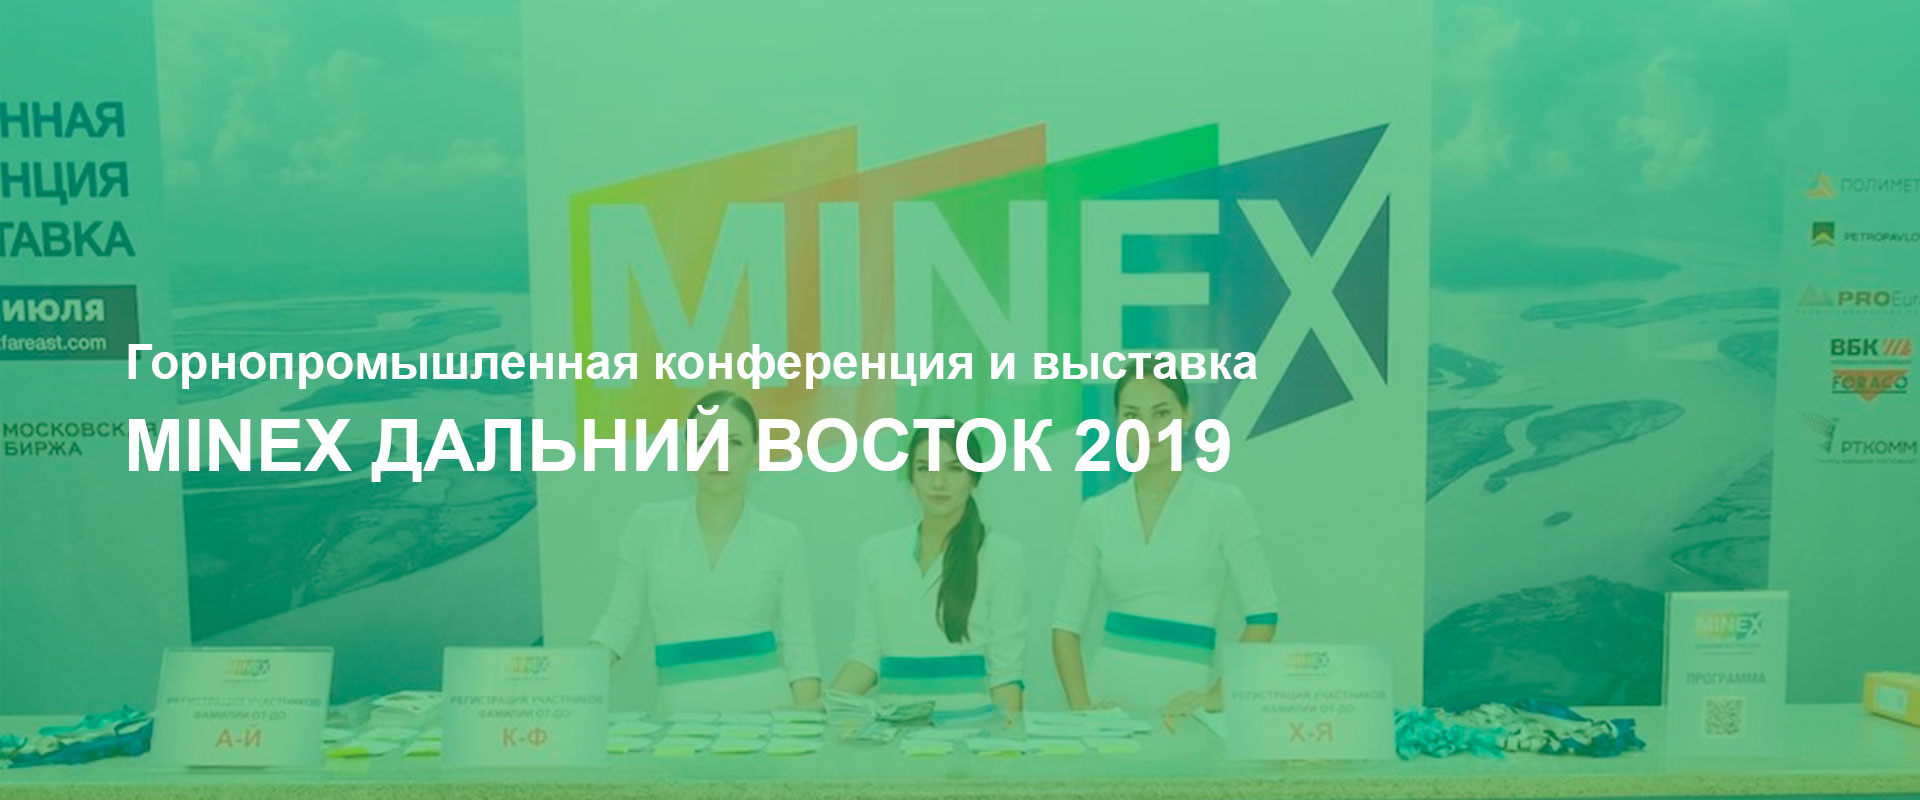 Конференция и выставка Minex Дальний восток 2019